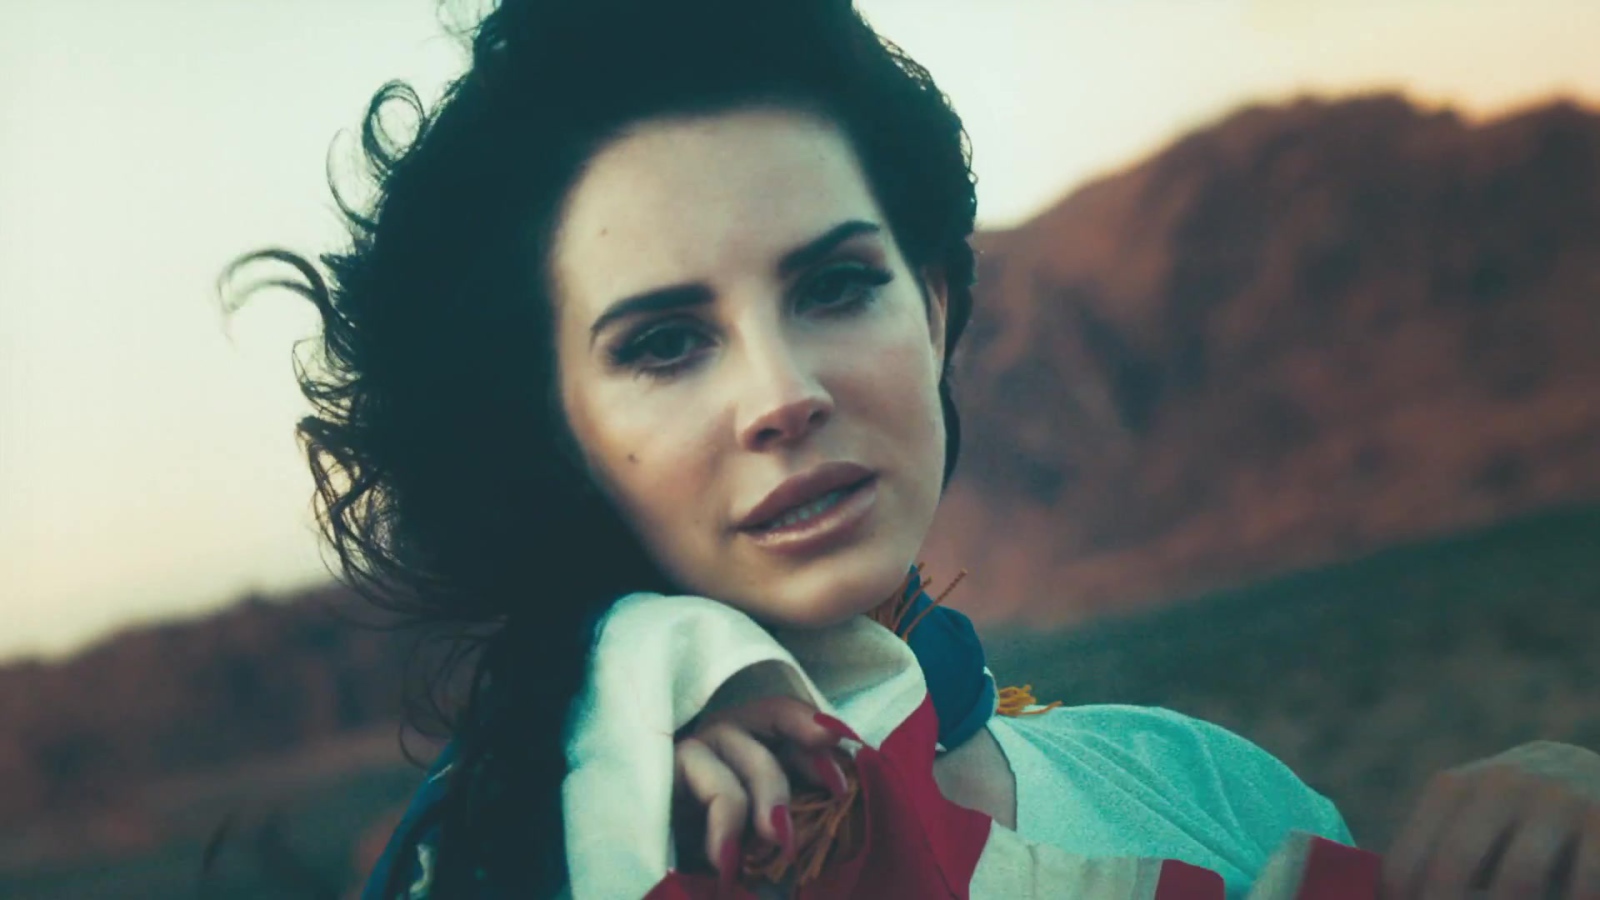 Lana Del Rey in the wind